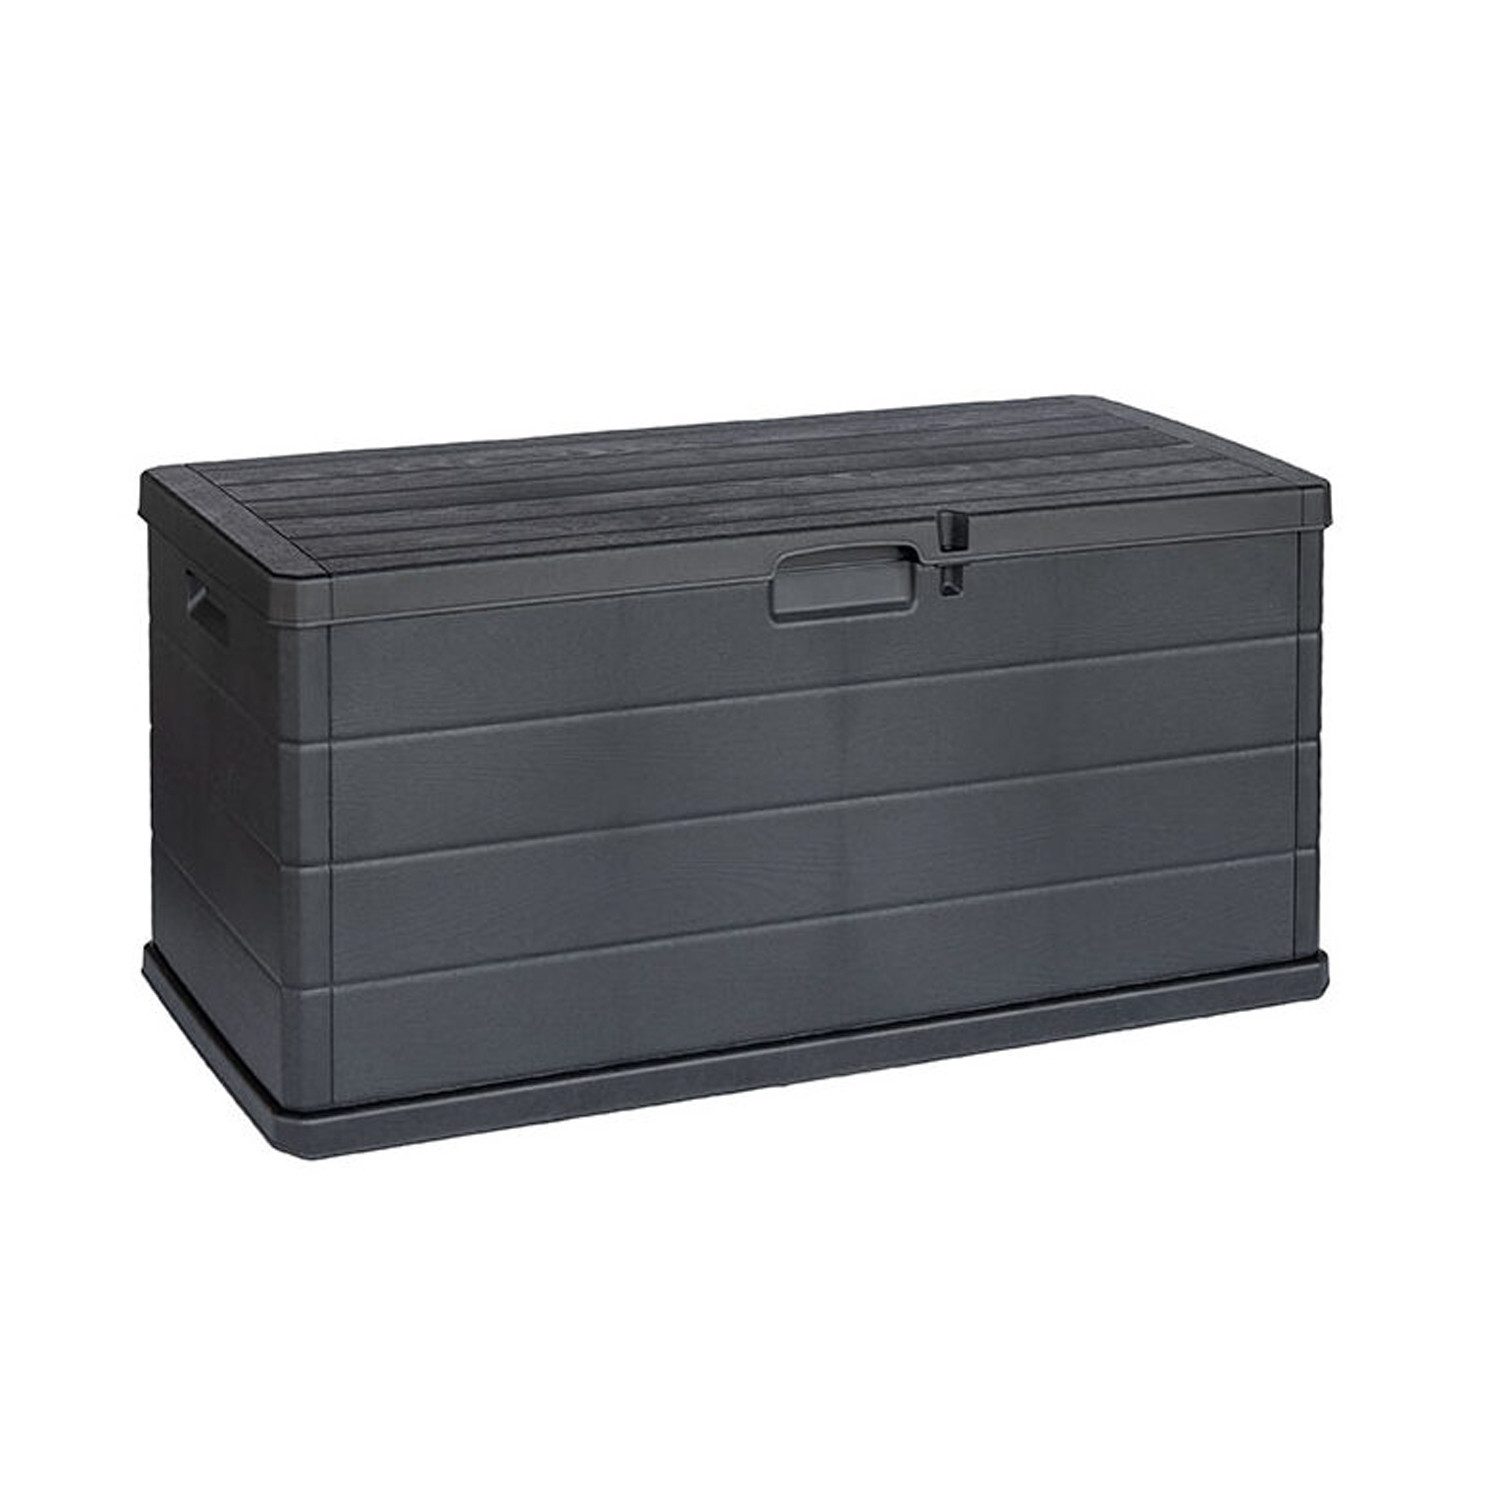 INDA-Exclusiv Auflagenbox XL Auflagenbox Sitzbank 2 Personen Kunststoff Anthrazit 340L